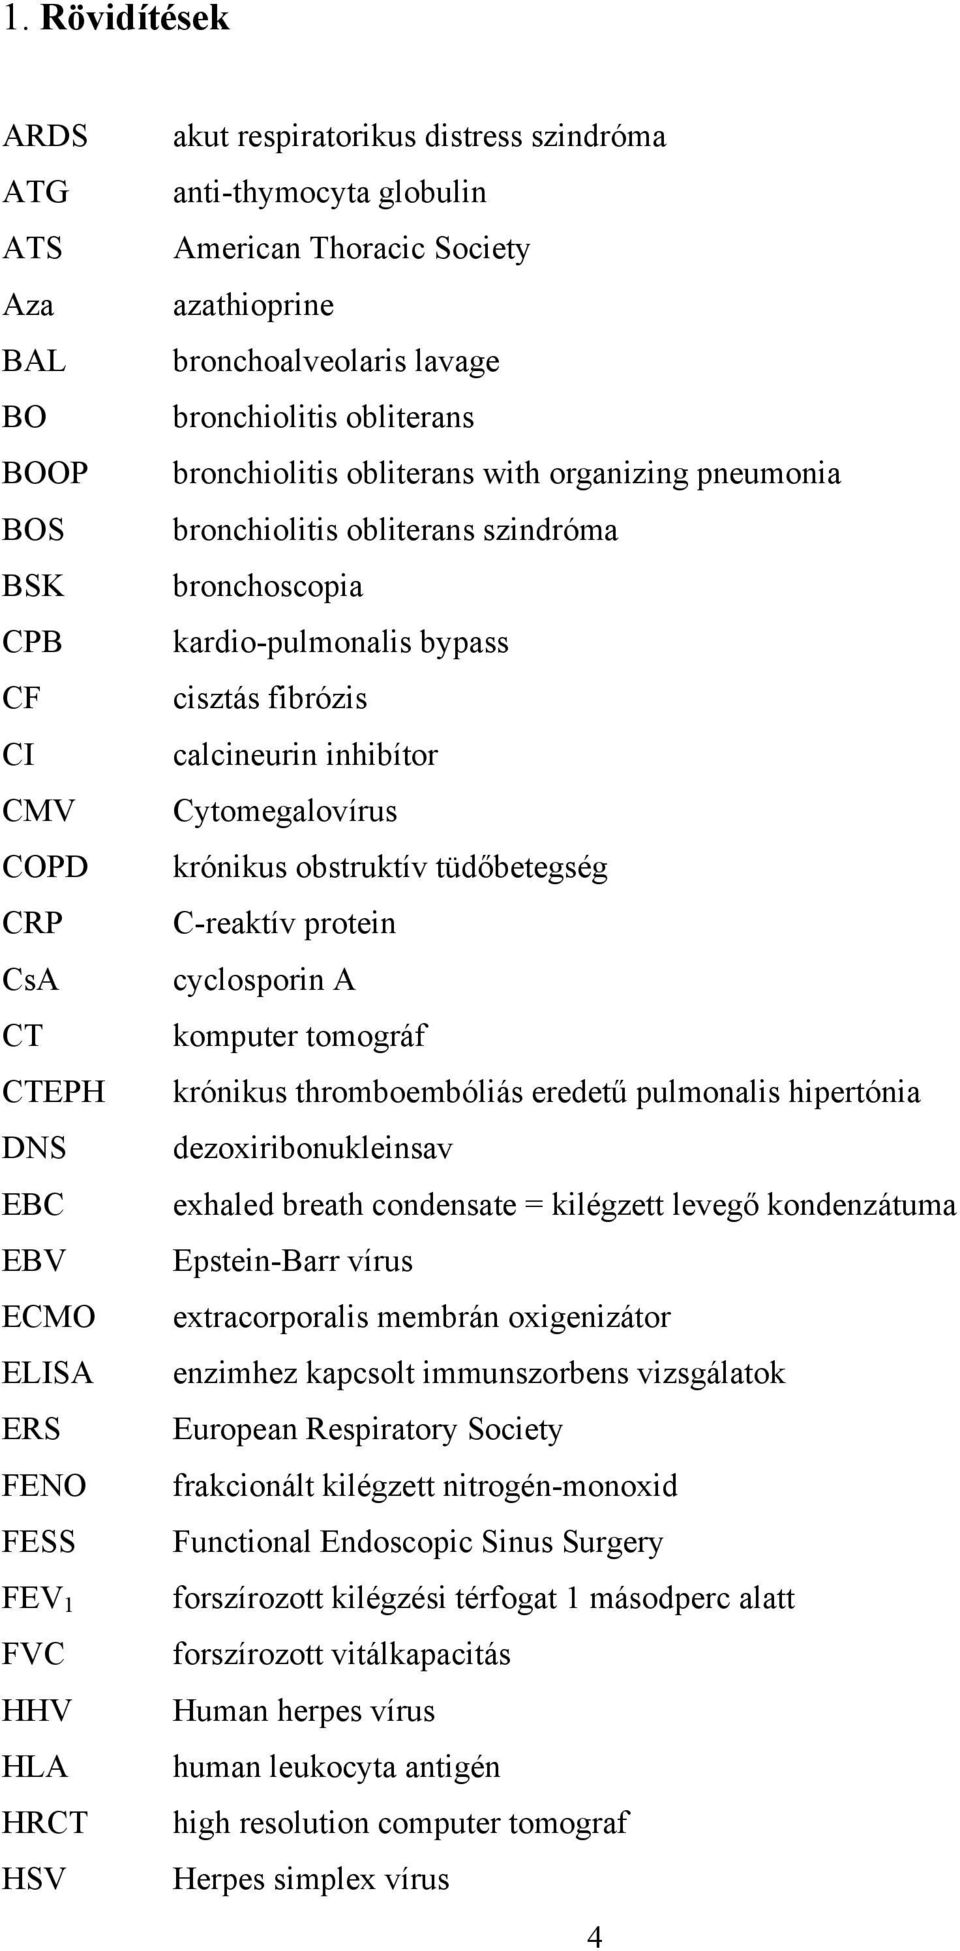 bronchoscopia kardio-pulmonalis bypass cisztás fibrózis calcineurin inhibítor Cytomegalovírus krónikus obstruktív tüdőbetegség C-reaktív protein cyclosporin A komputer tomográf krónikus